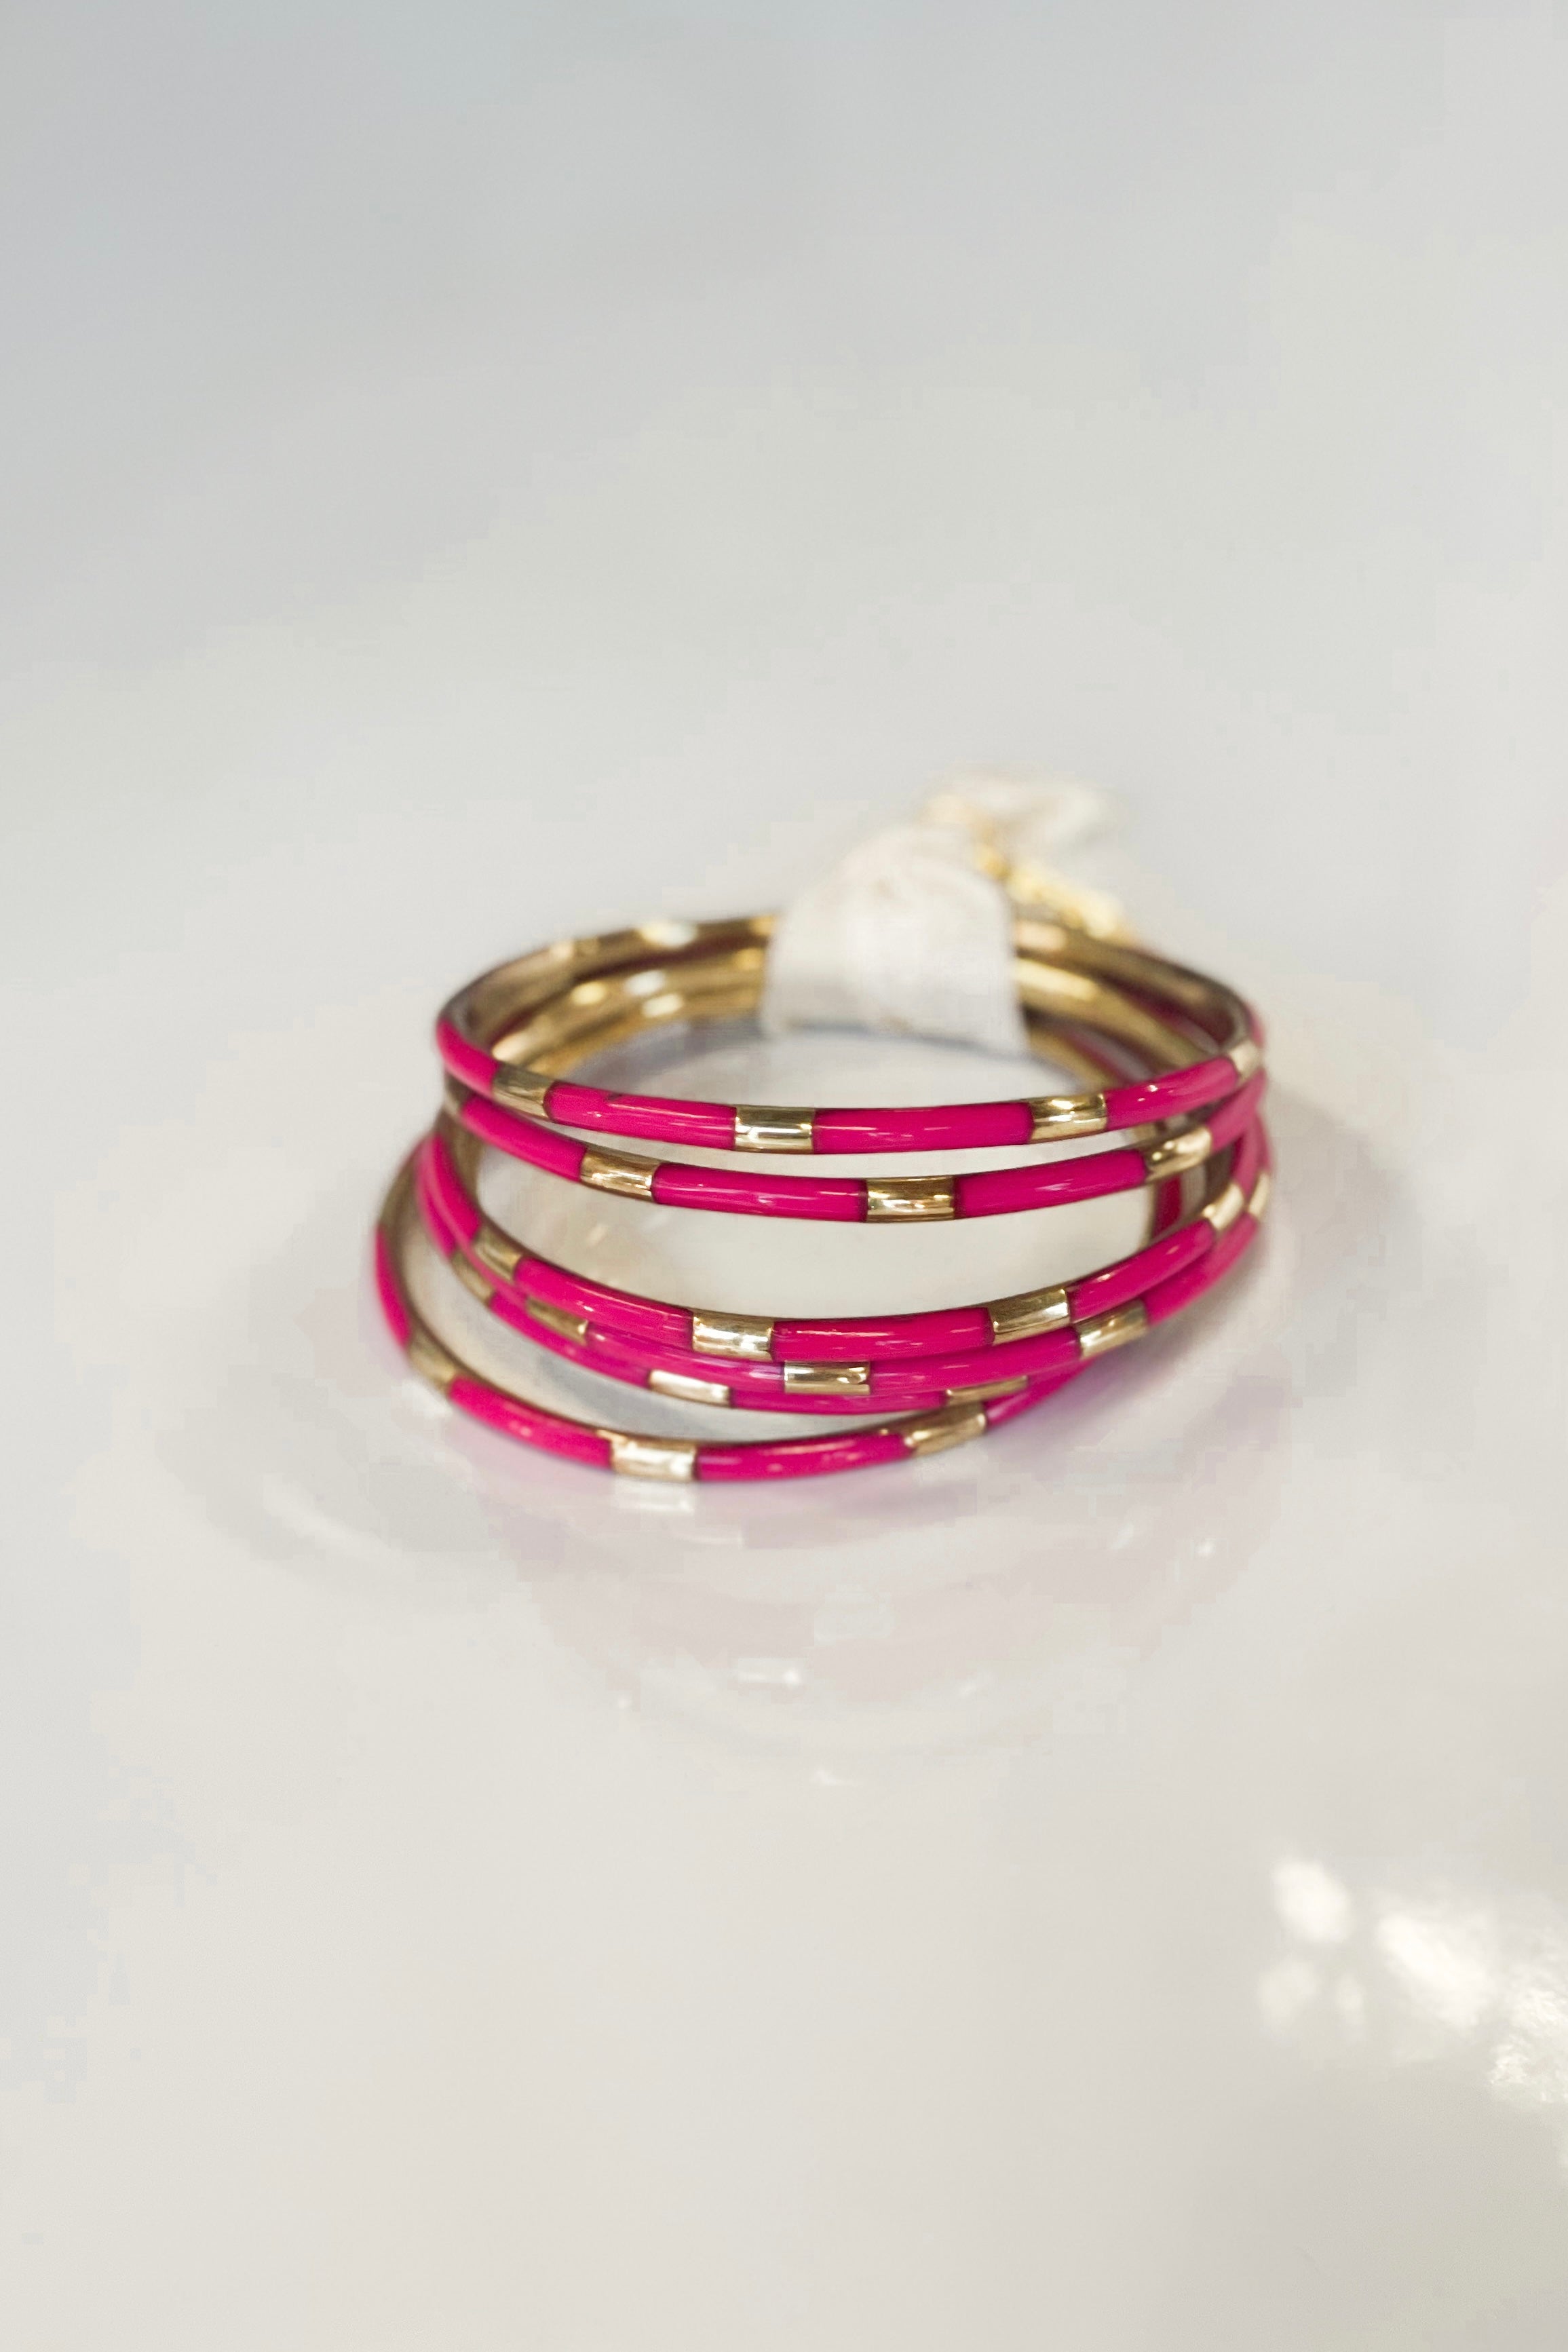 Pink Enamel Veda Bangle Bracelets - Set of 6